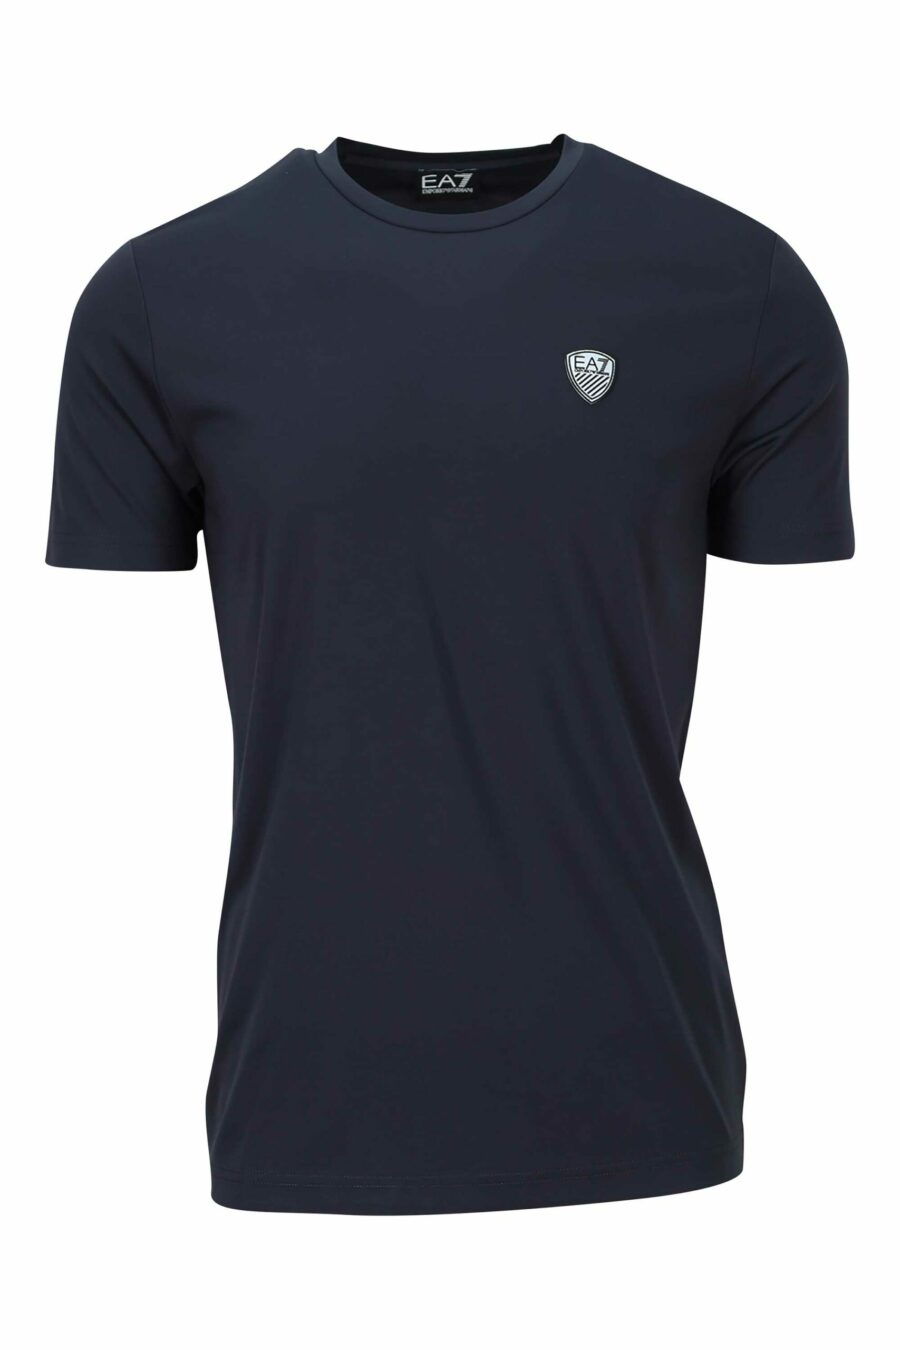 T-shirt bleu marine avec le mini-logo "lux identity" - 8057767519964 à l'échelle